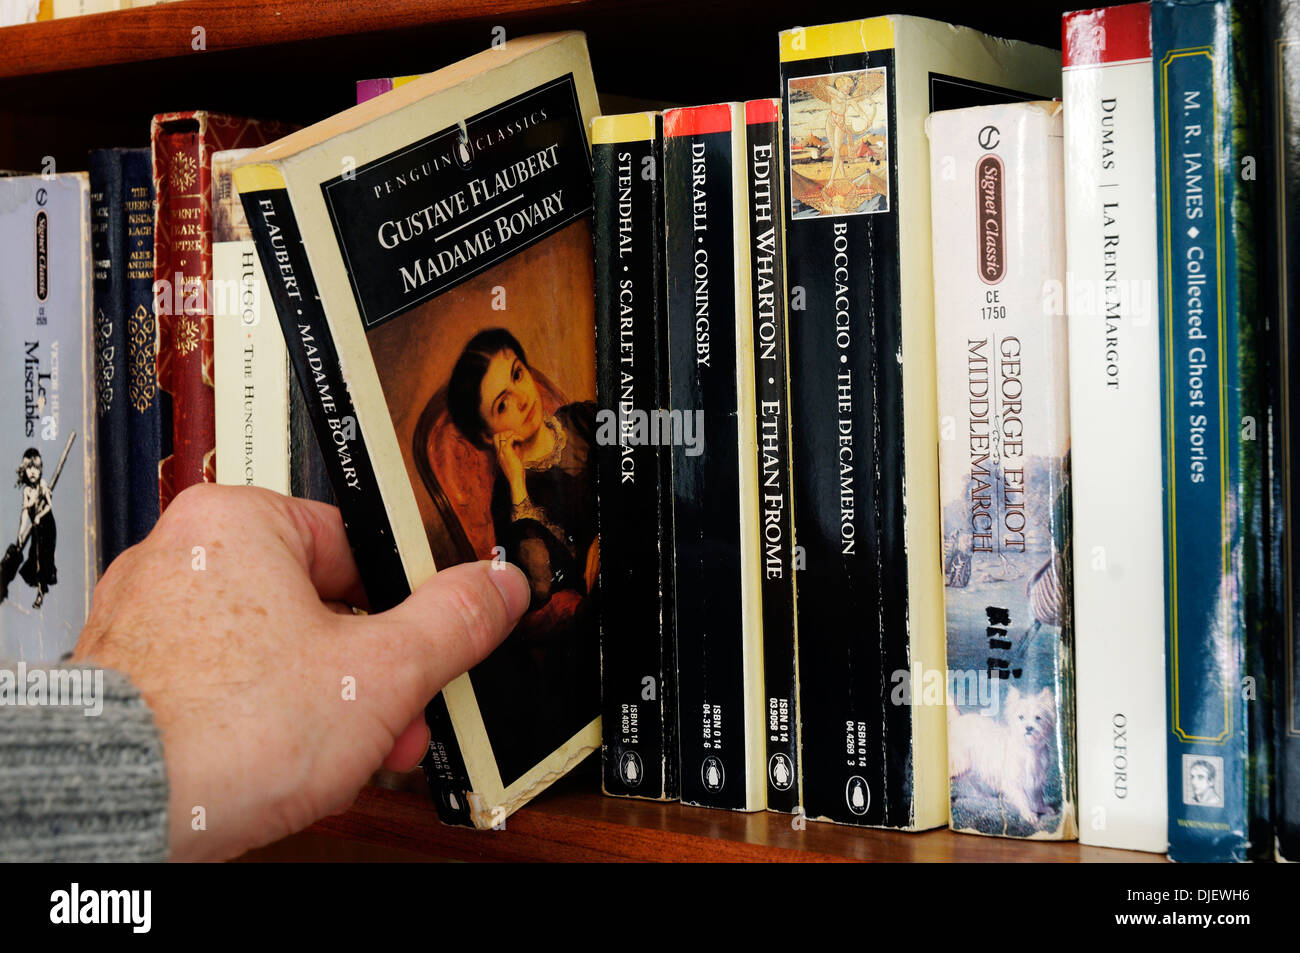 Una mano tomando Gustave Flaubert Madame Bovary desde una estantería Foto de stock